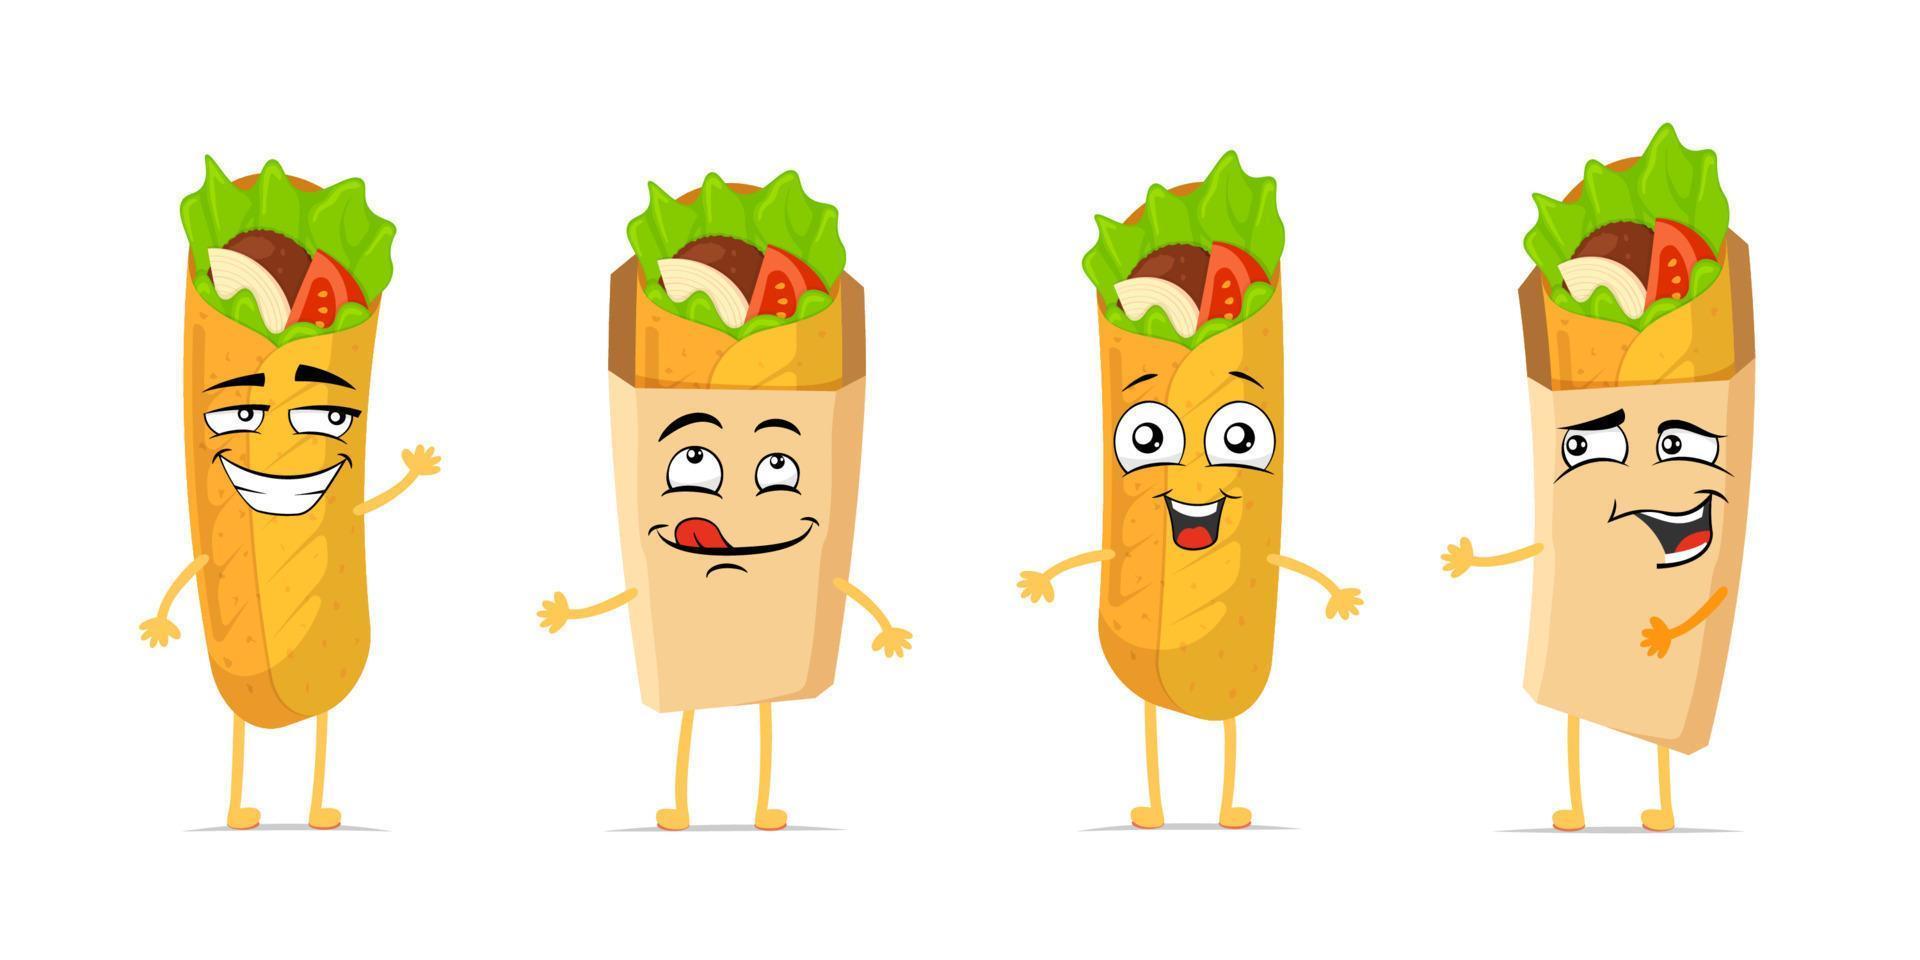 shawarma engraçado sorridente conjunto de personagens de desenhos animados. doner kebab coleção de mascote de expressão de rosto feliz bonito. diferentes emoticons em quadrinhos alegres de burrito fast food vector ilustração eps